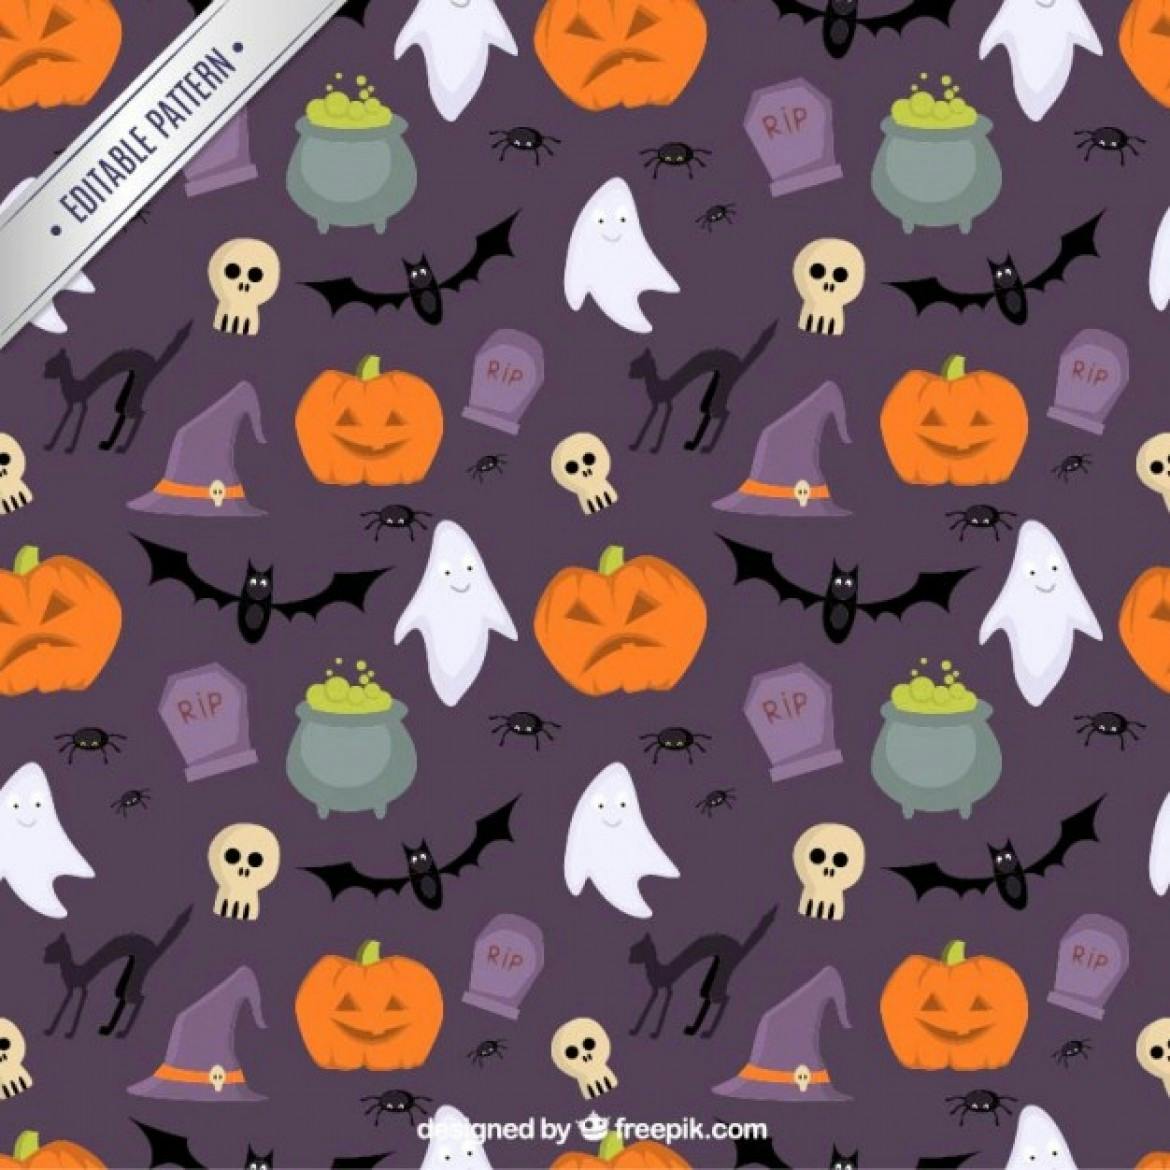 Editable Halloween pattern